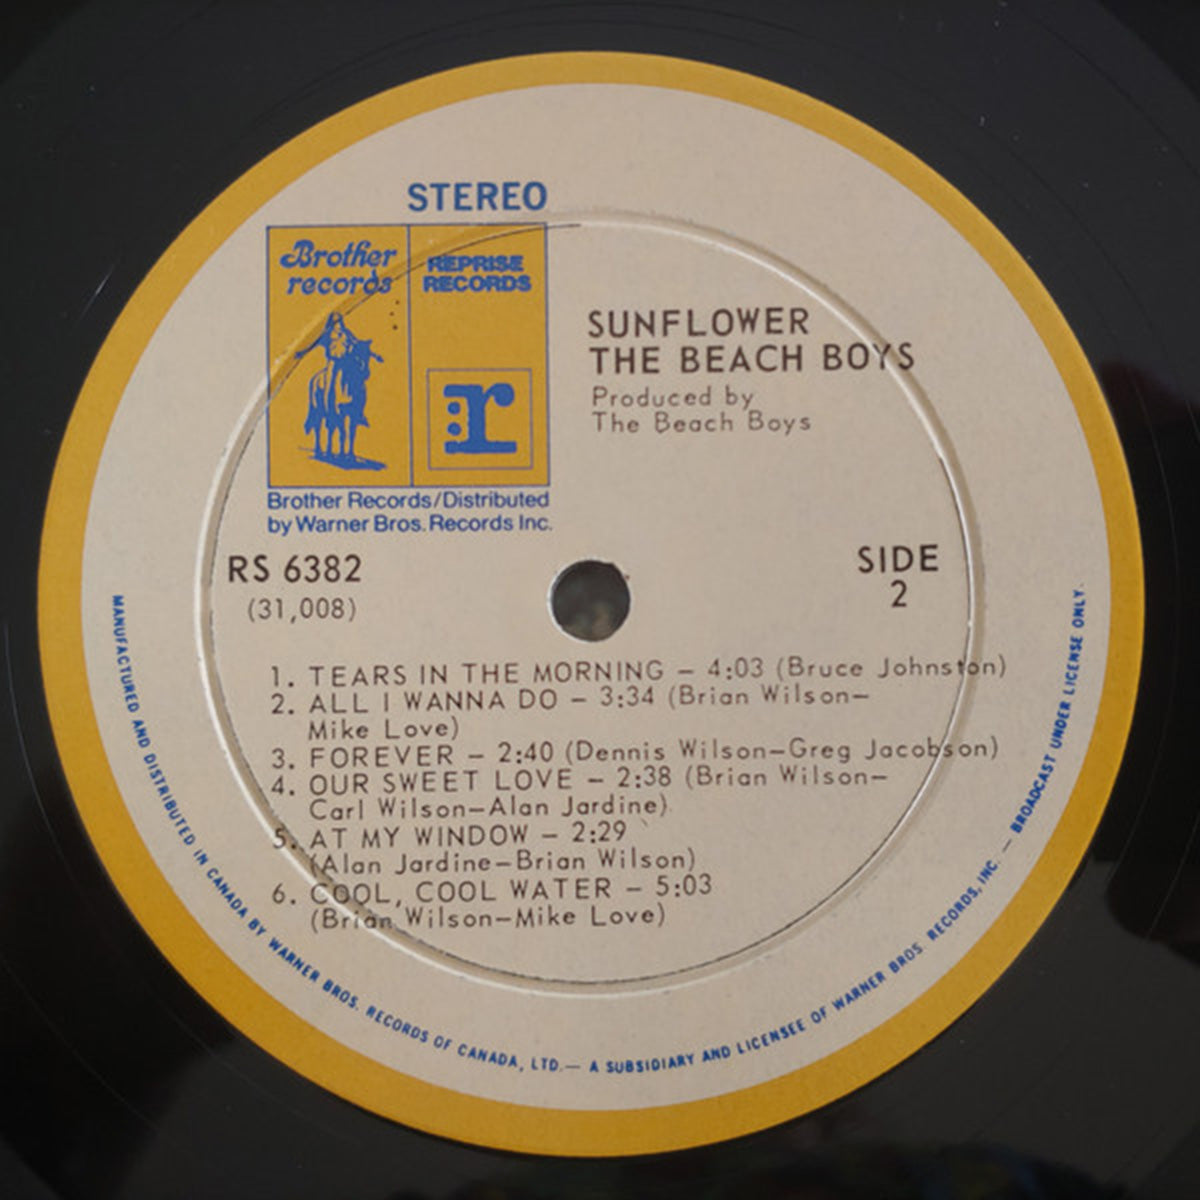 The Beach Boys – Sunflower - 1970